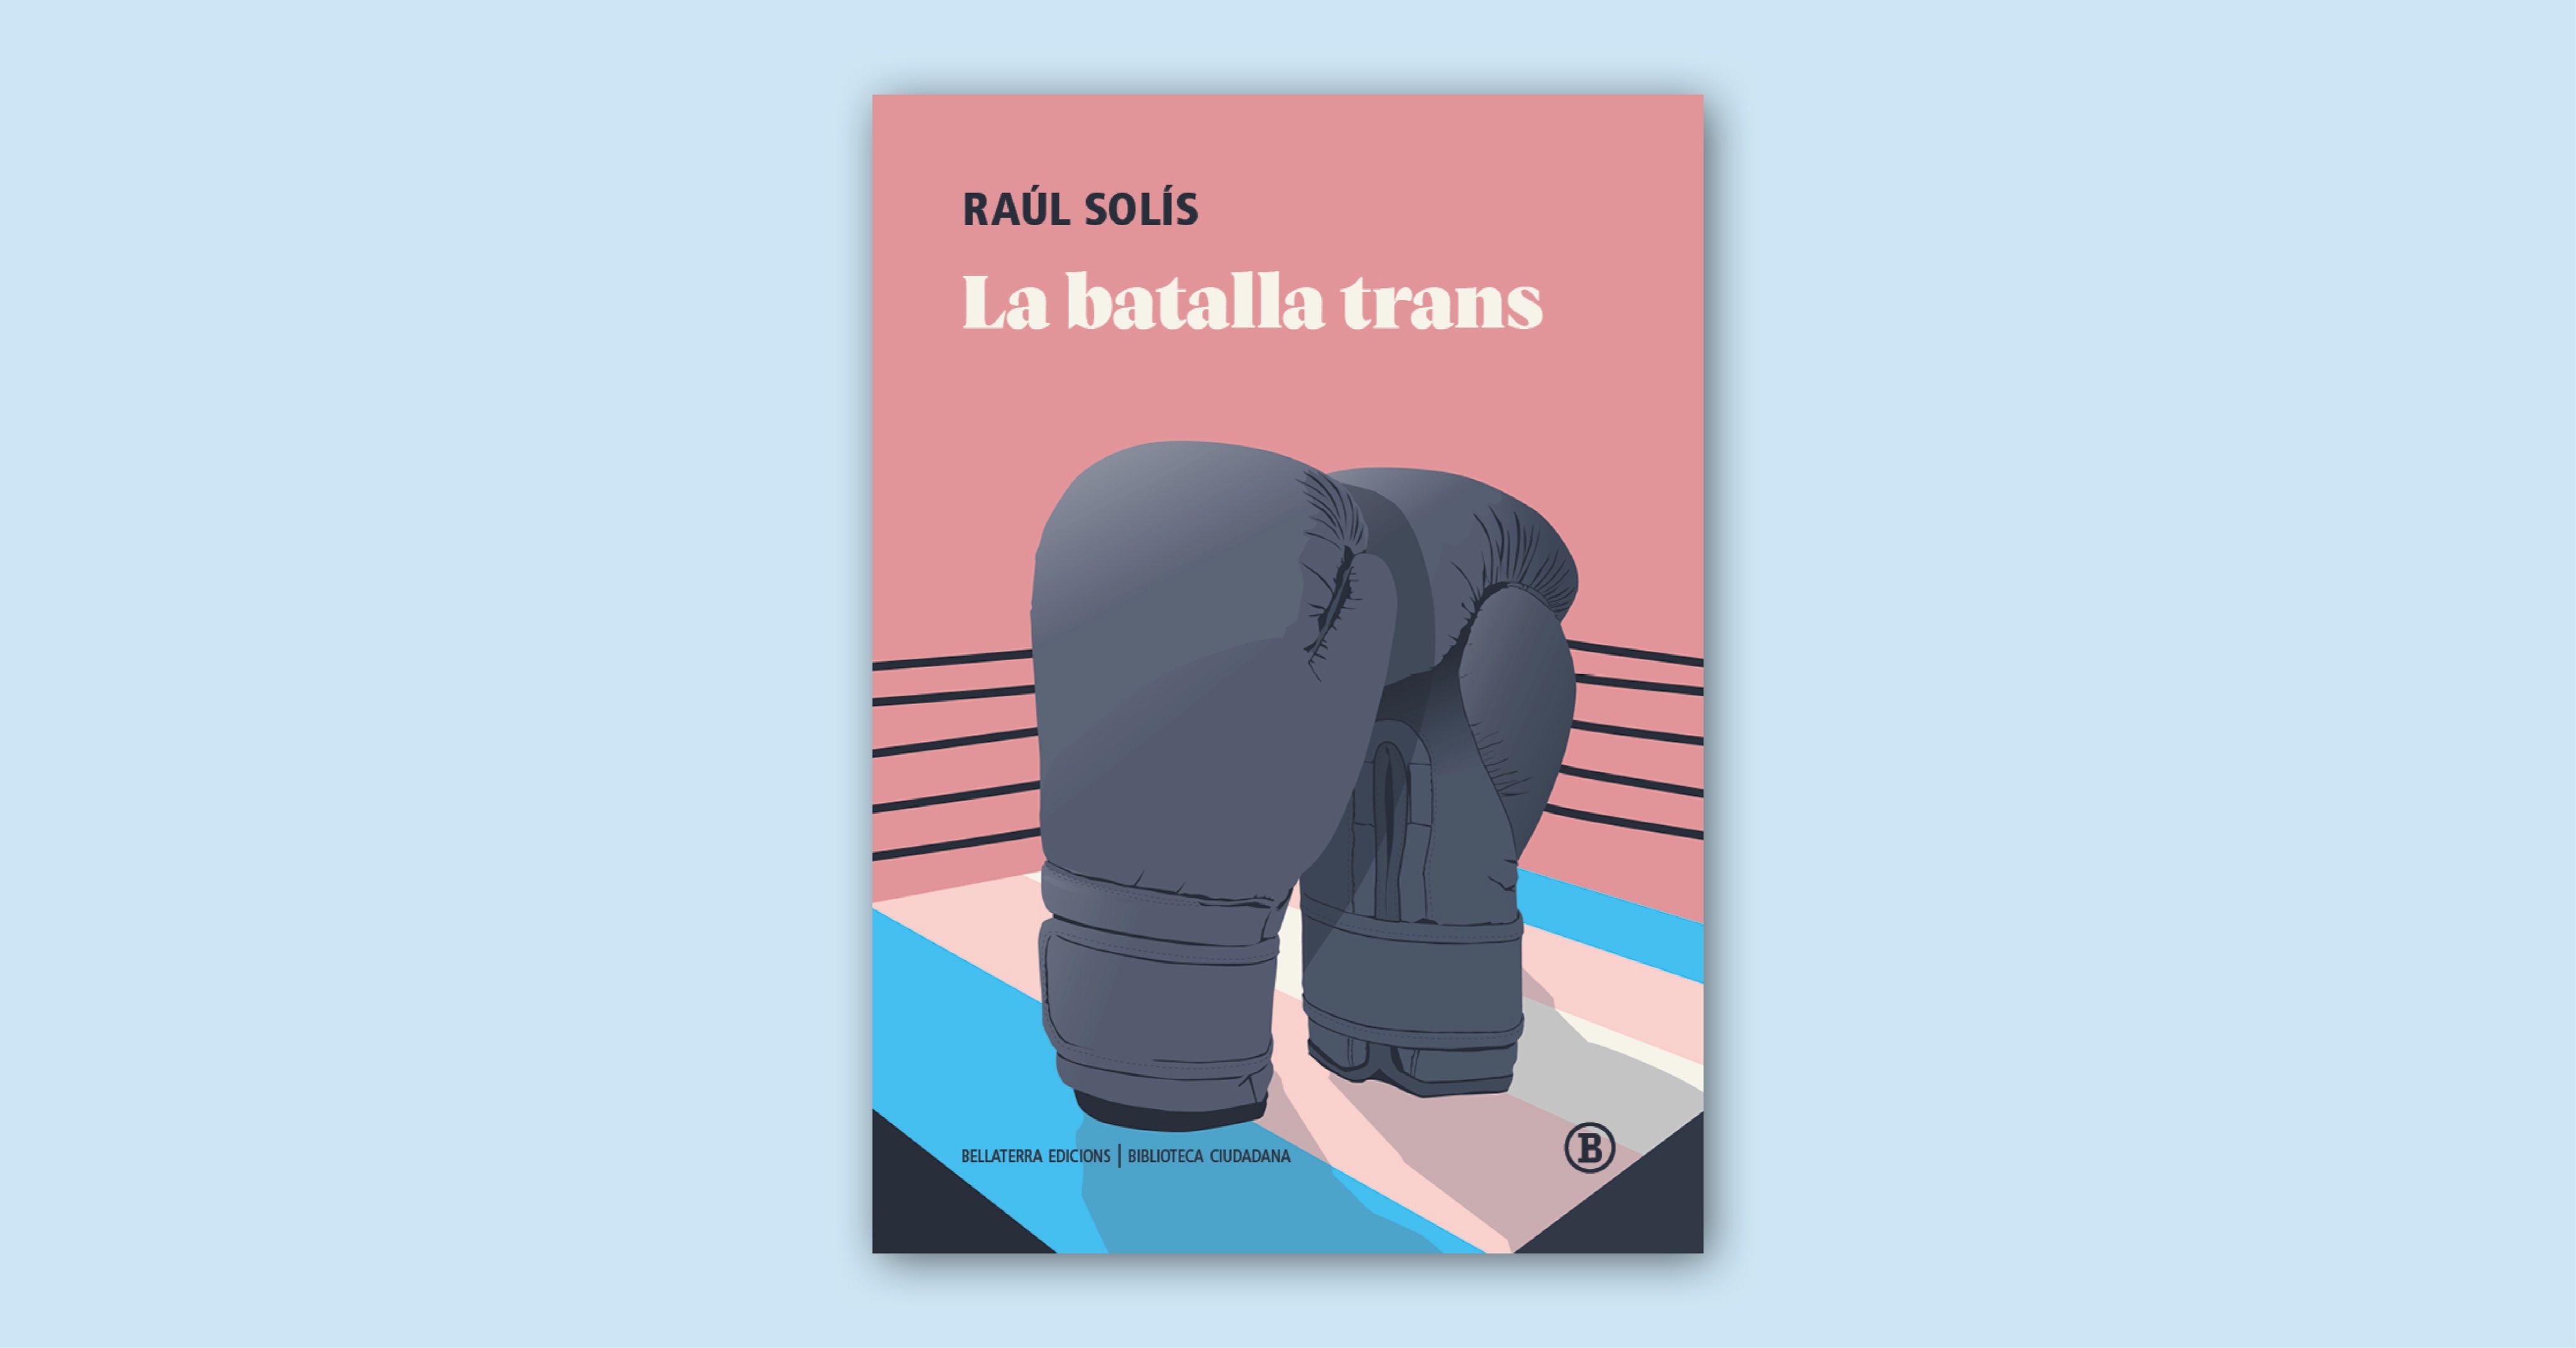 La portada de 'La batalla trans' ilustra guantes de boxeo en un ring bajo los colores de la bandera trans